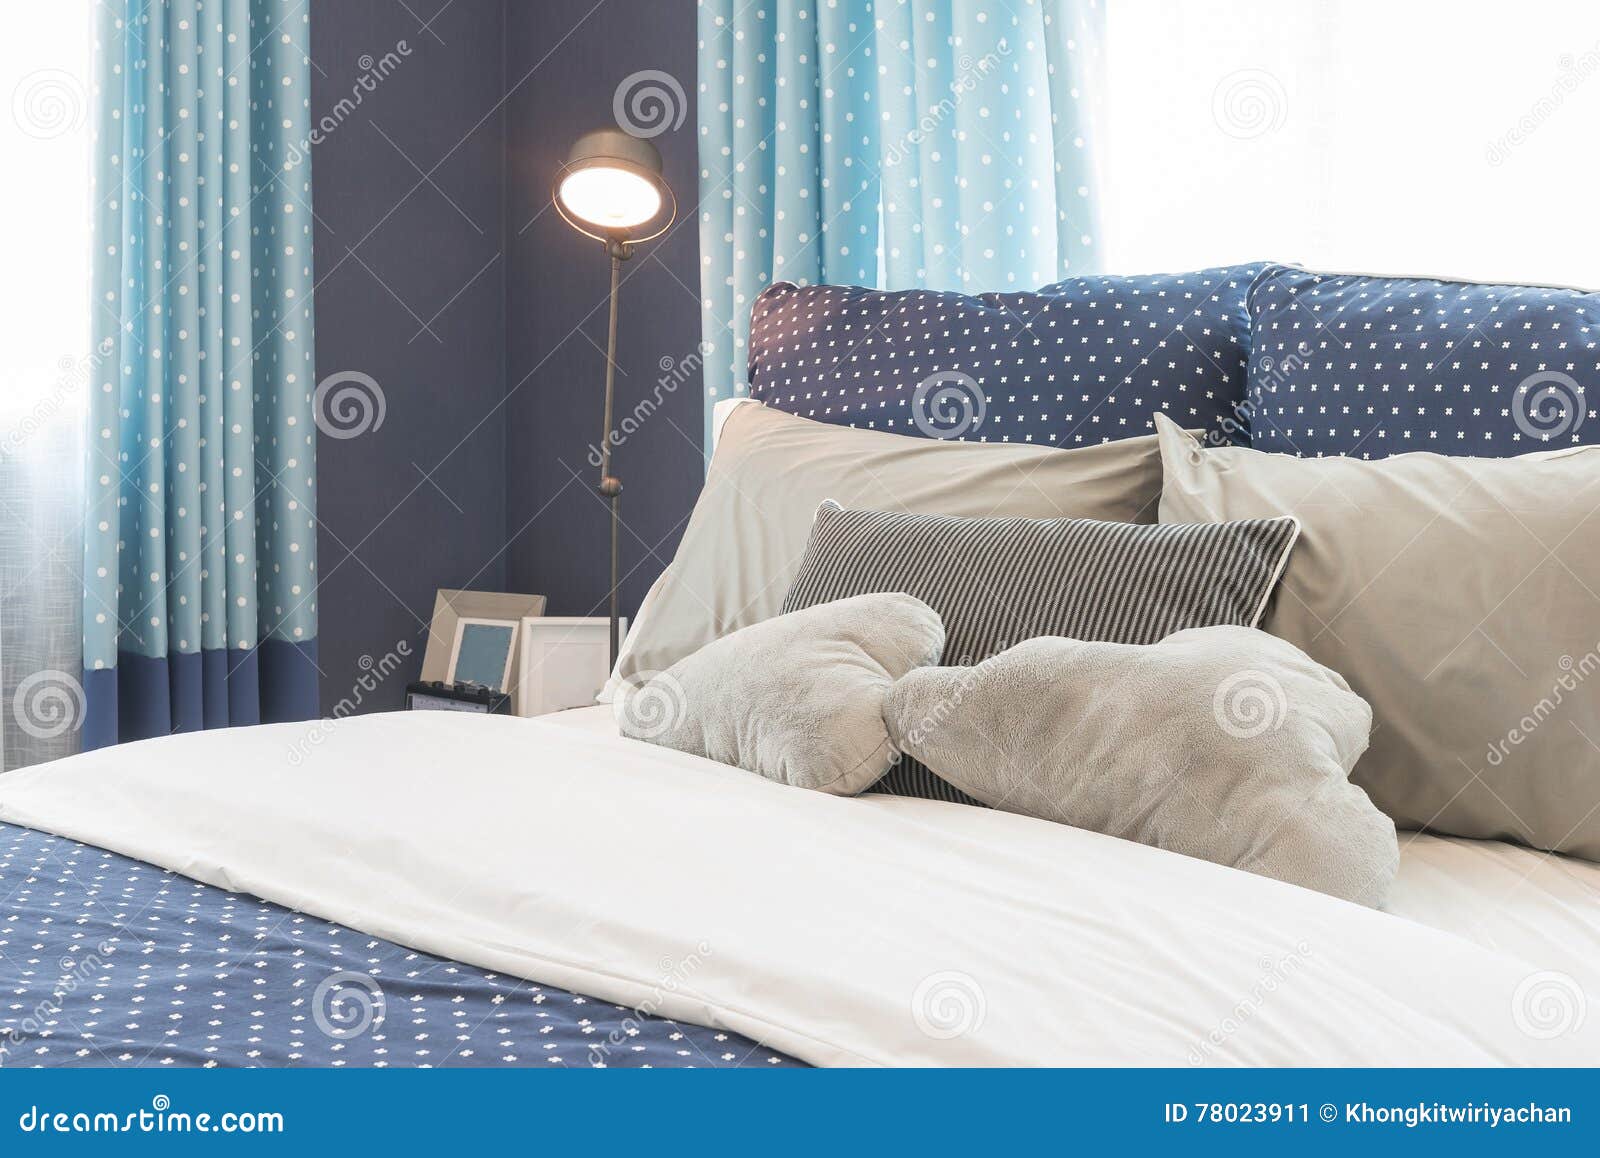 Diseno De Dormitorio Azul - Diseño De Casa